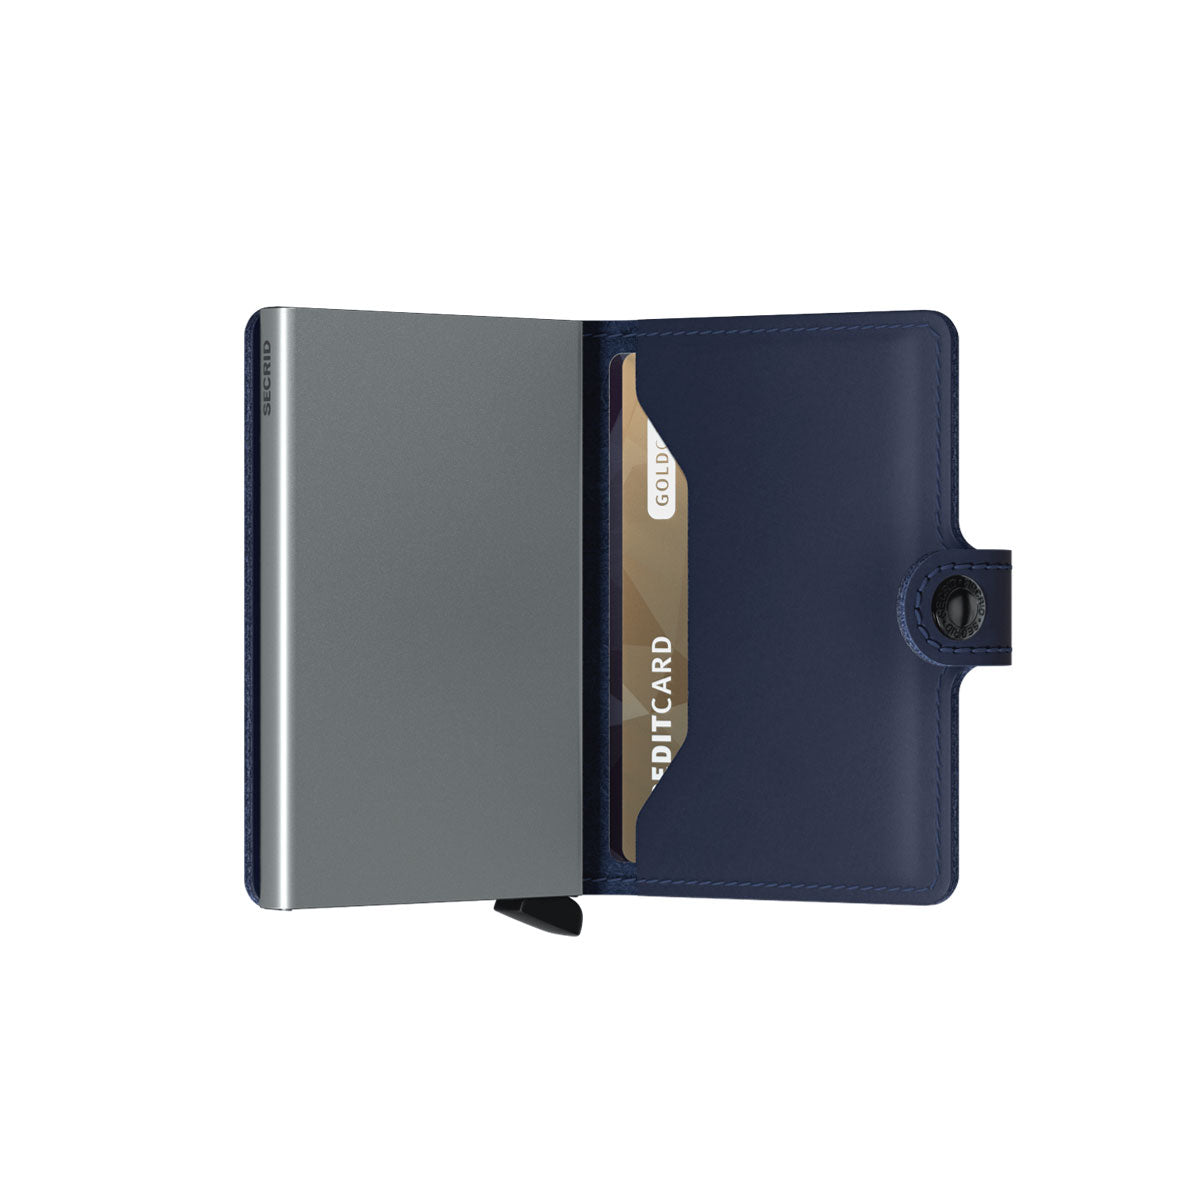 Secrid Mini Wallet Original Navy